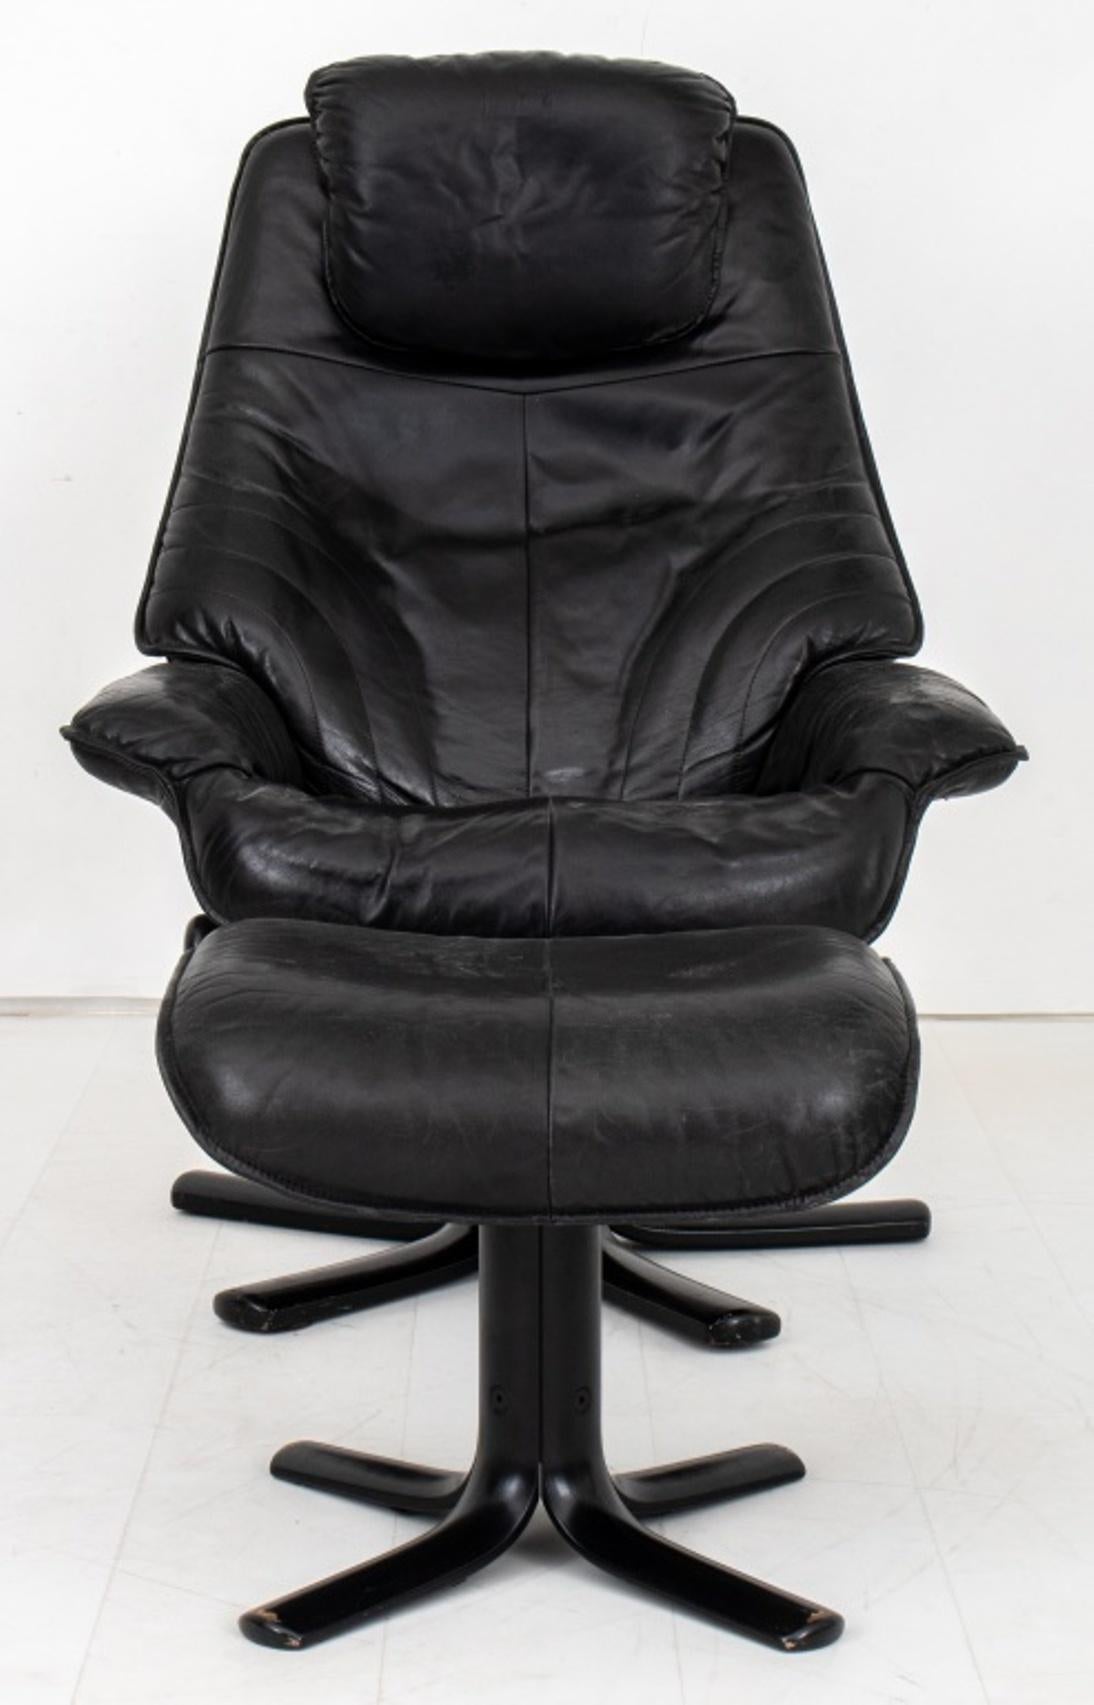 Chaise et ottoman modernes danois en cuir noir, avec siège et accoudoirs rembourrés, sur une base étoilée à cinq pieds.
Dimensions : 42